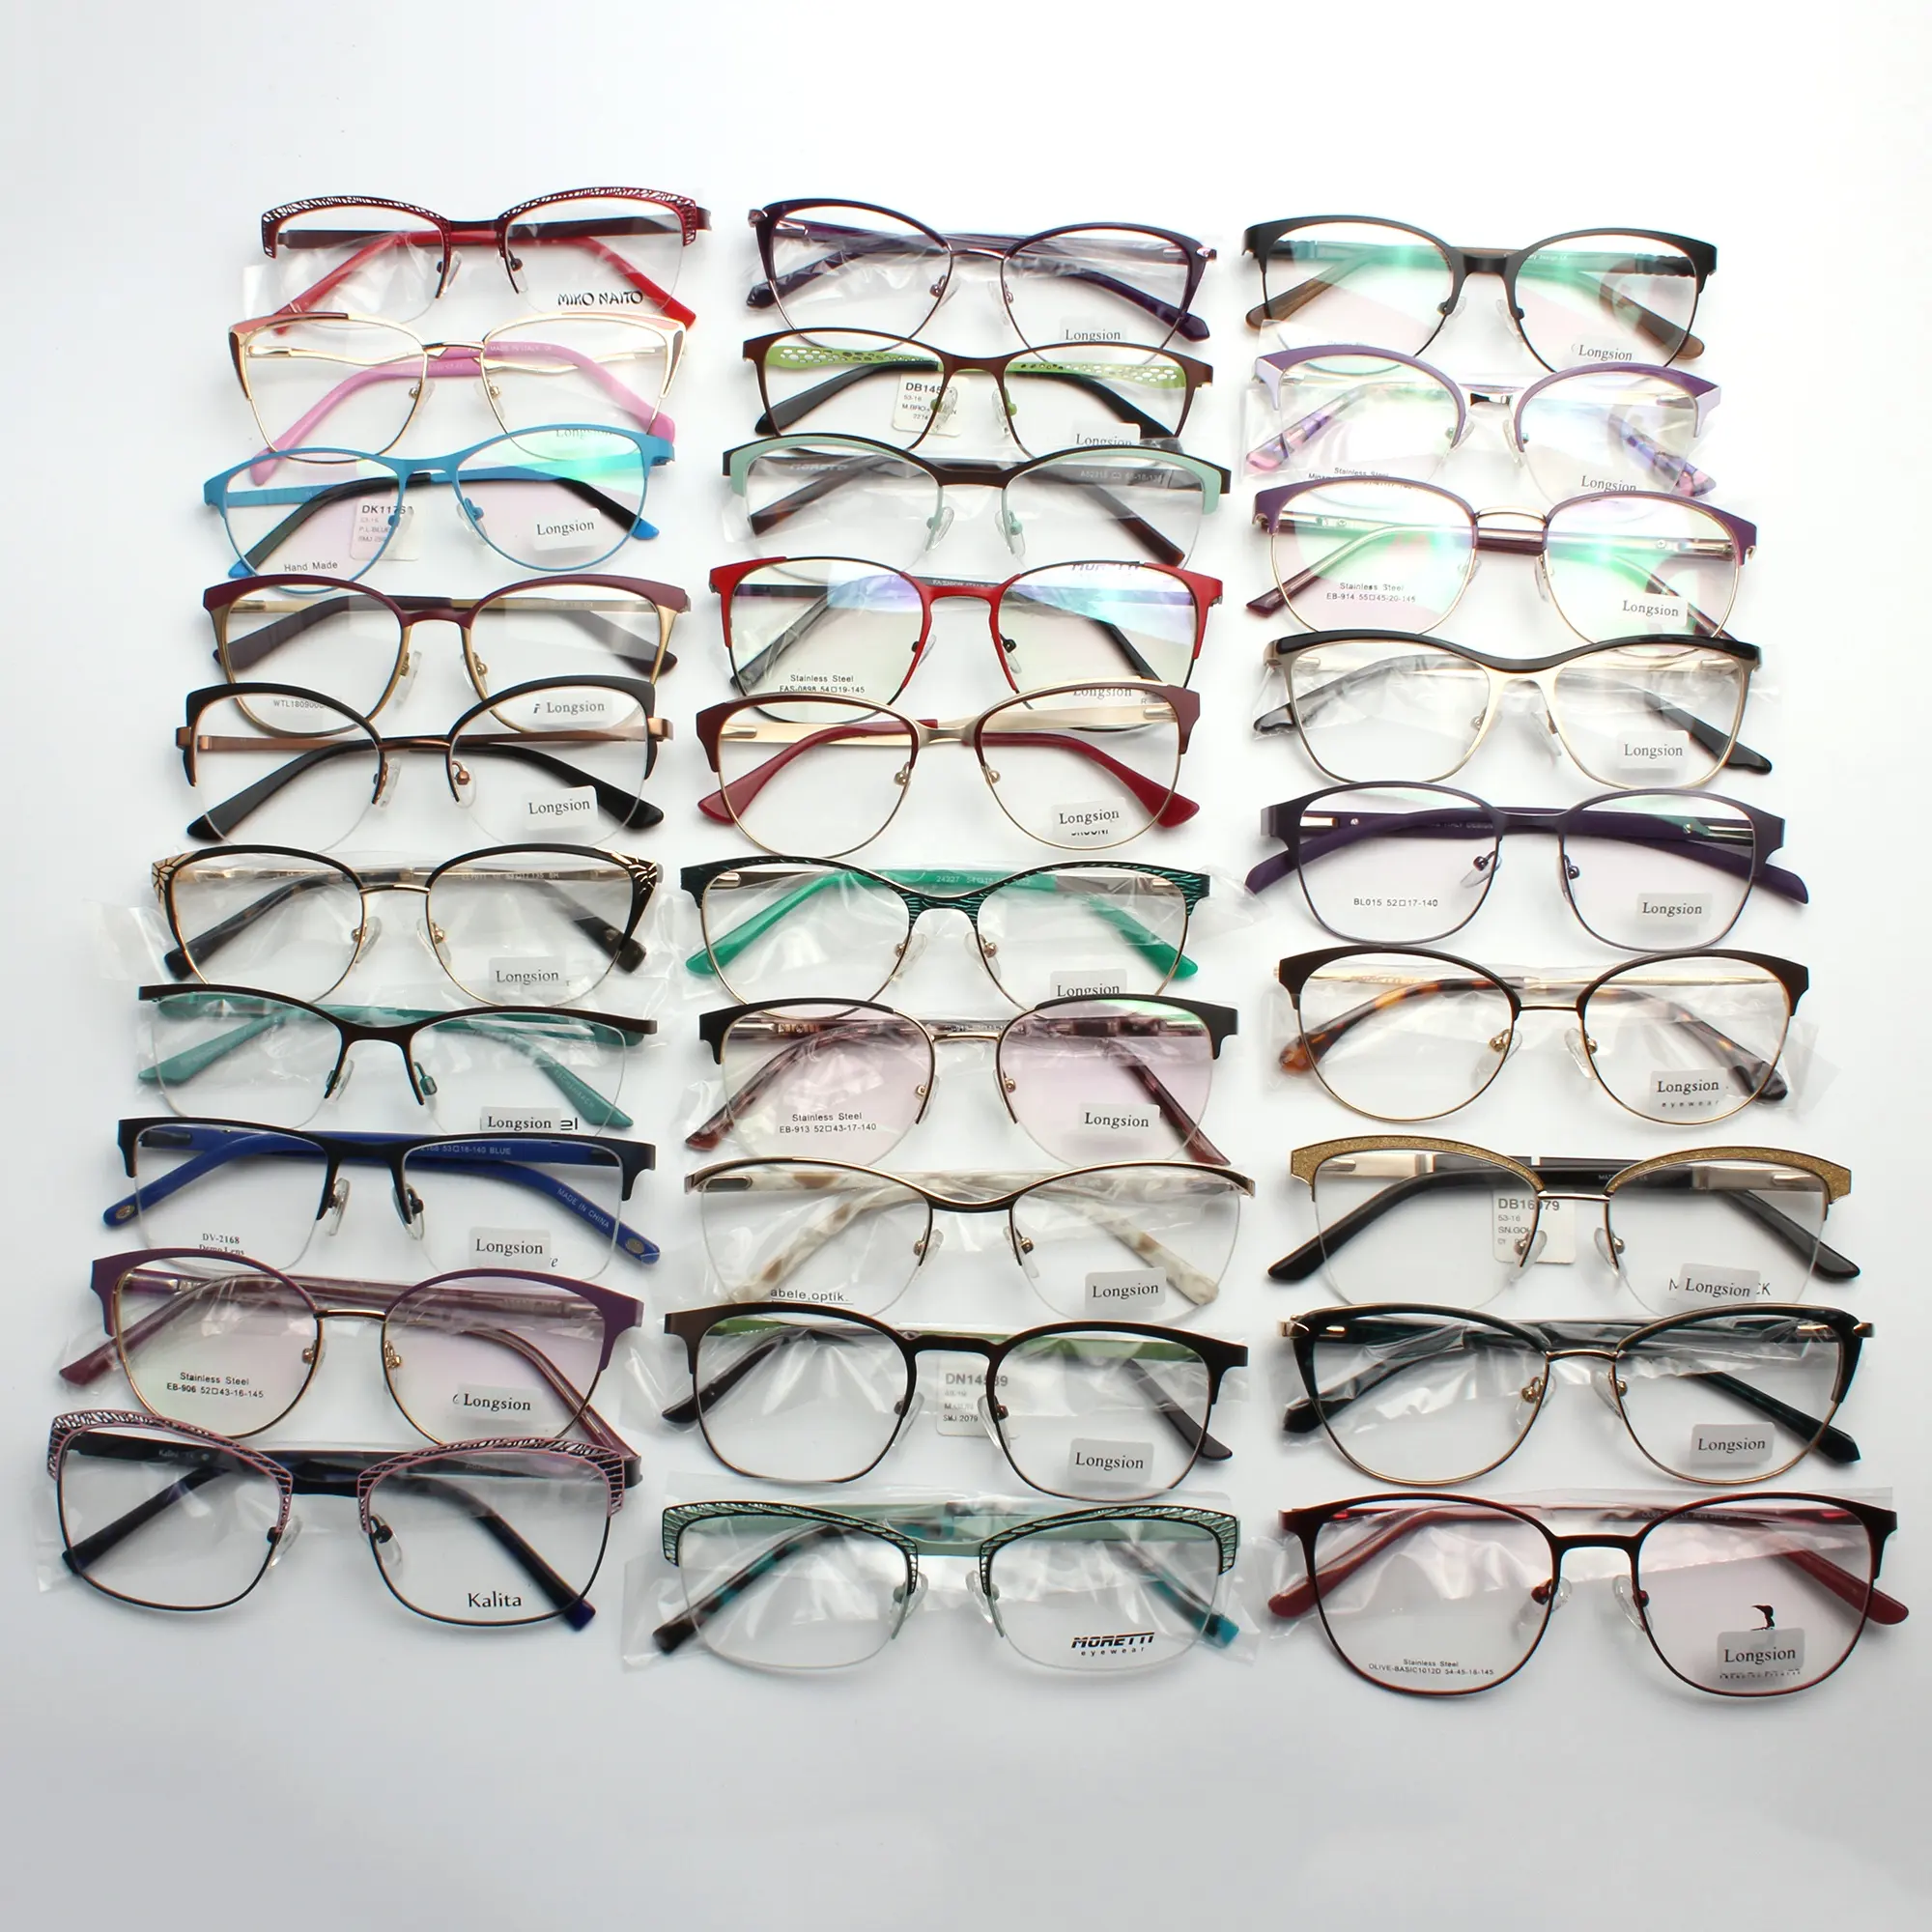 رخيصة الثمن متنوعة النظارات الإطار المعدني الأسهم جاهزة إطارات النظارات البصرية لمتجر